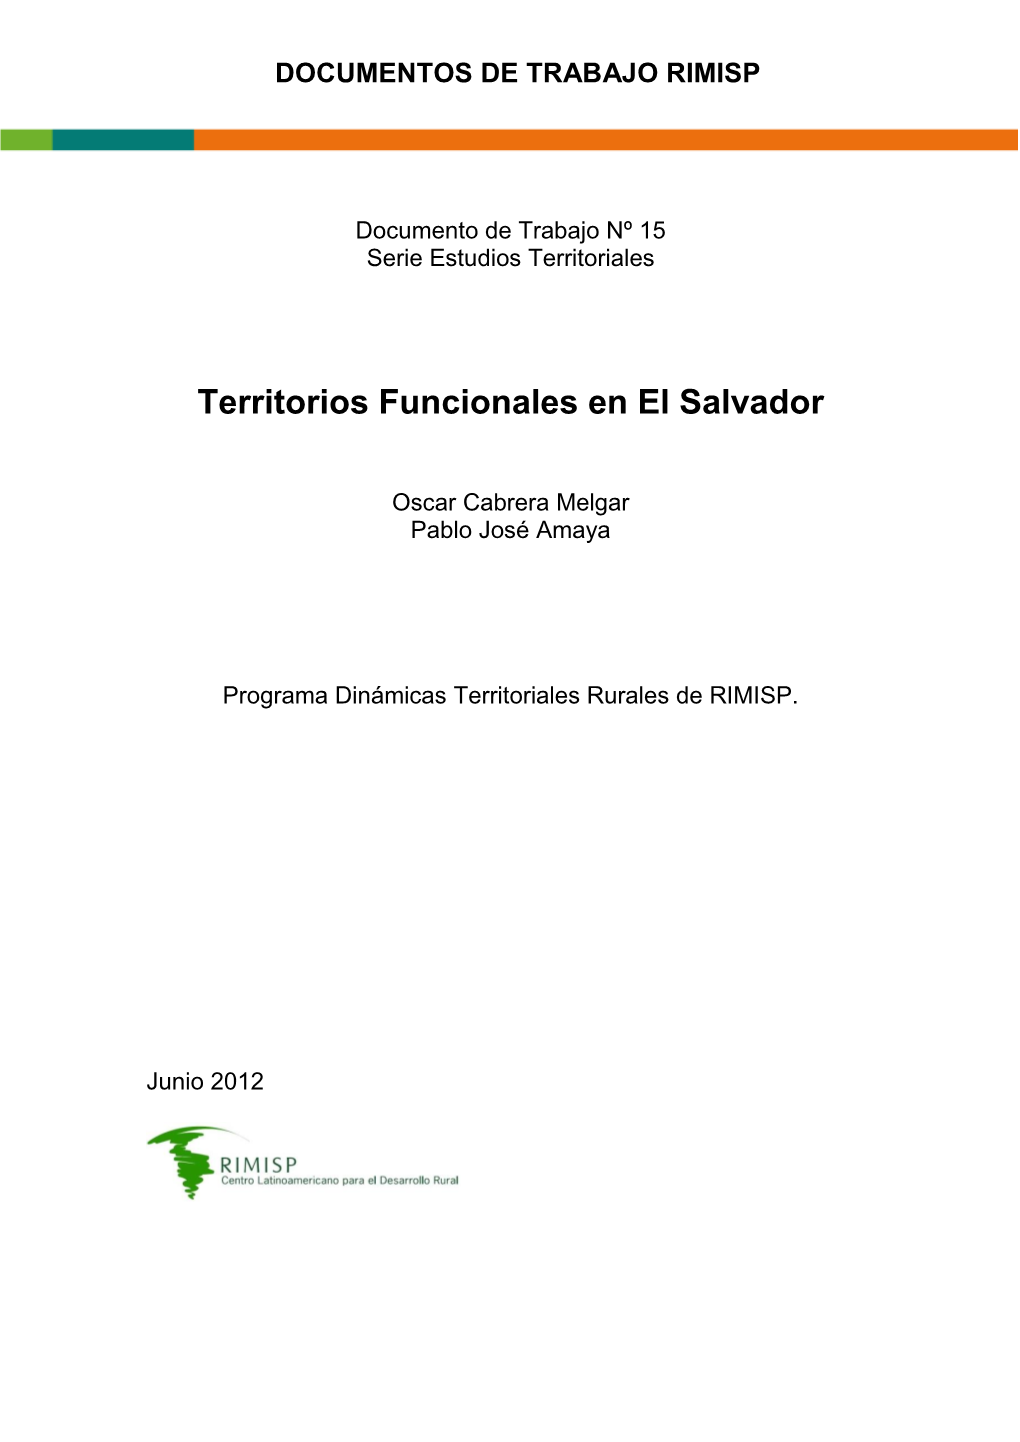 Territorios Funcionales En El Salvador